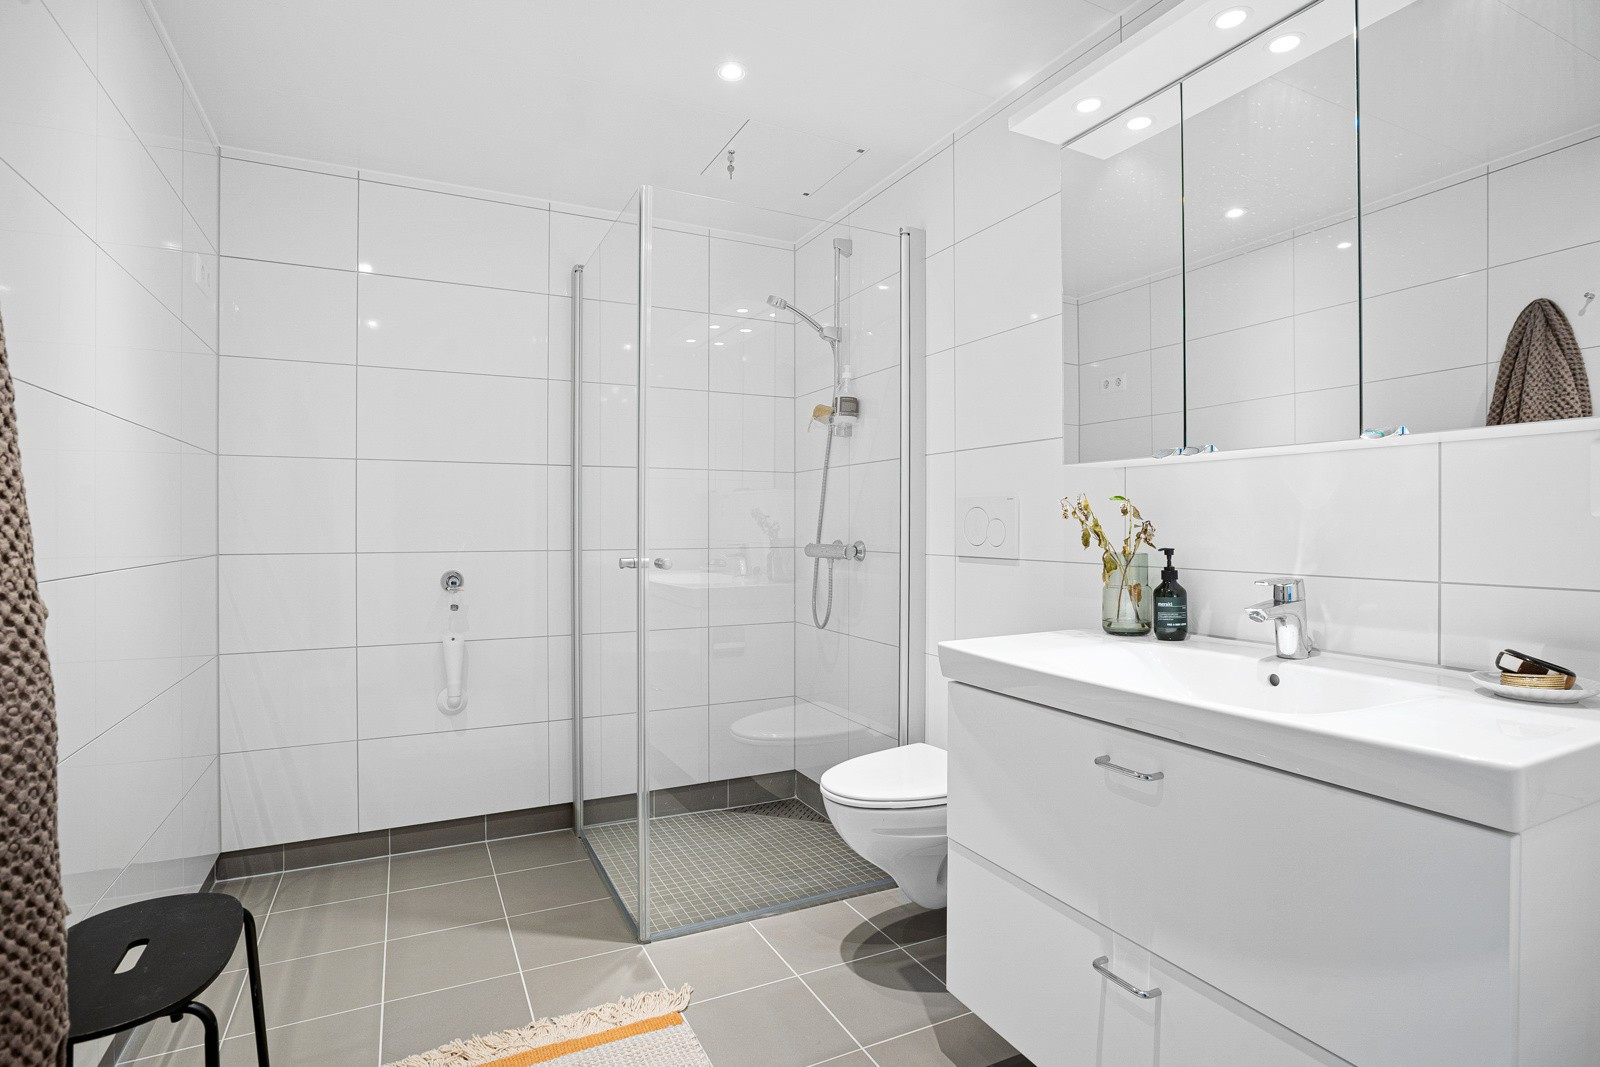 Flislagt hovedbad med praktisk innredning, dusj med innfellbare glassdører og vegghengt toalett.